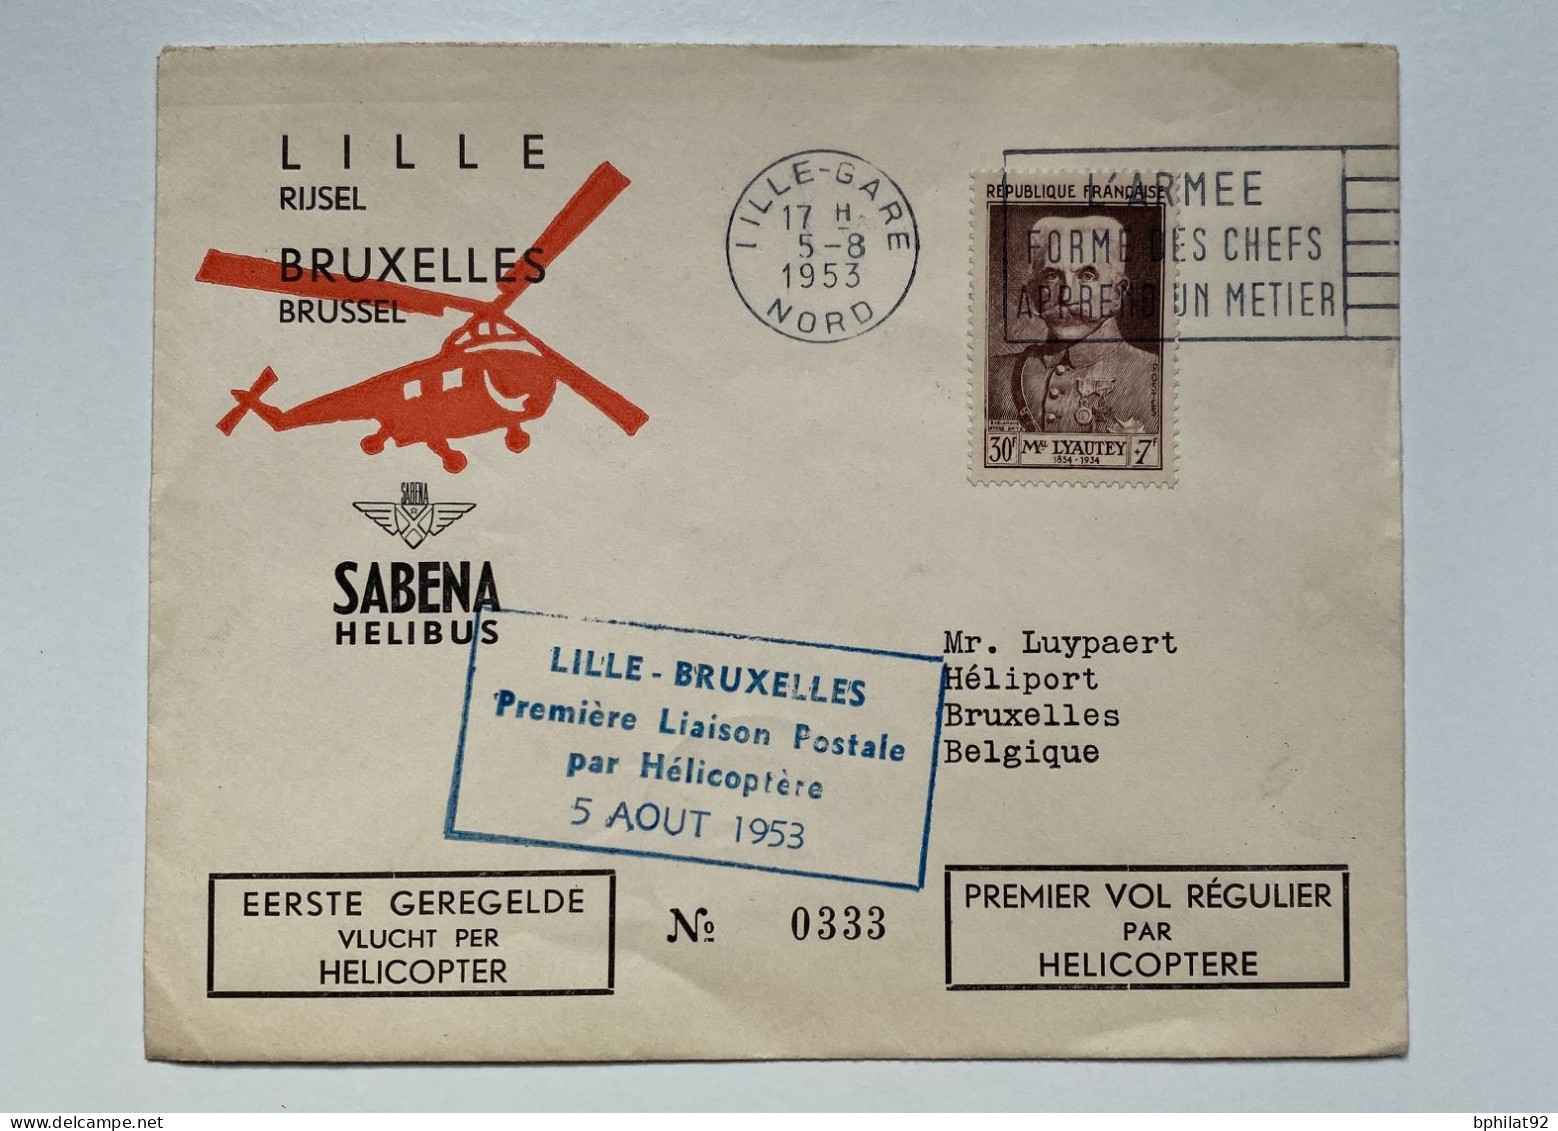 !!! BELGIQUE, COMMEMO 1ER VOL RÉGULIER PAR HÉLICOPTÈRE VIA LA SABENA LILLE BRUXELLES 5/8/1953 - Lettres & Documents